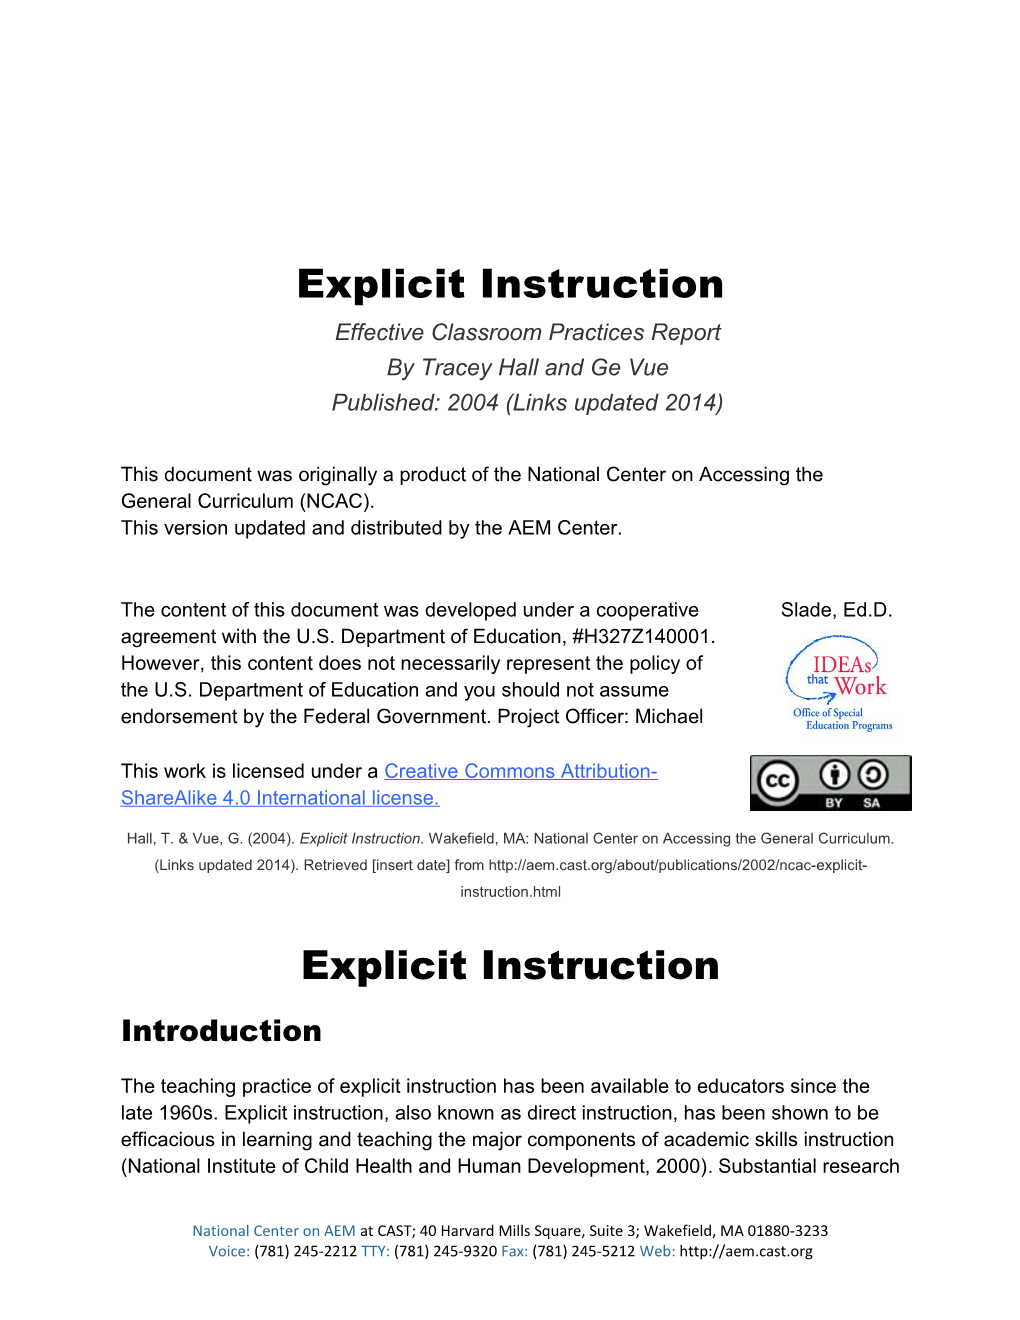 Effective Classroom Practices Report